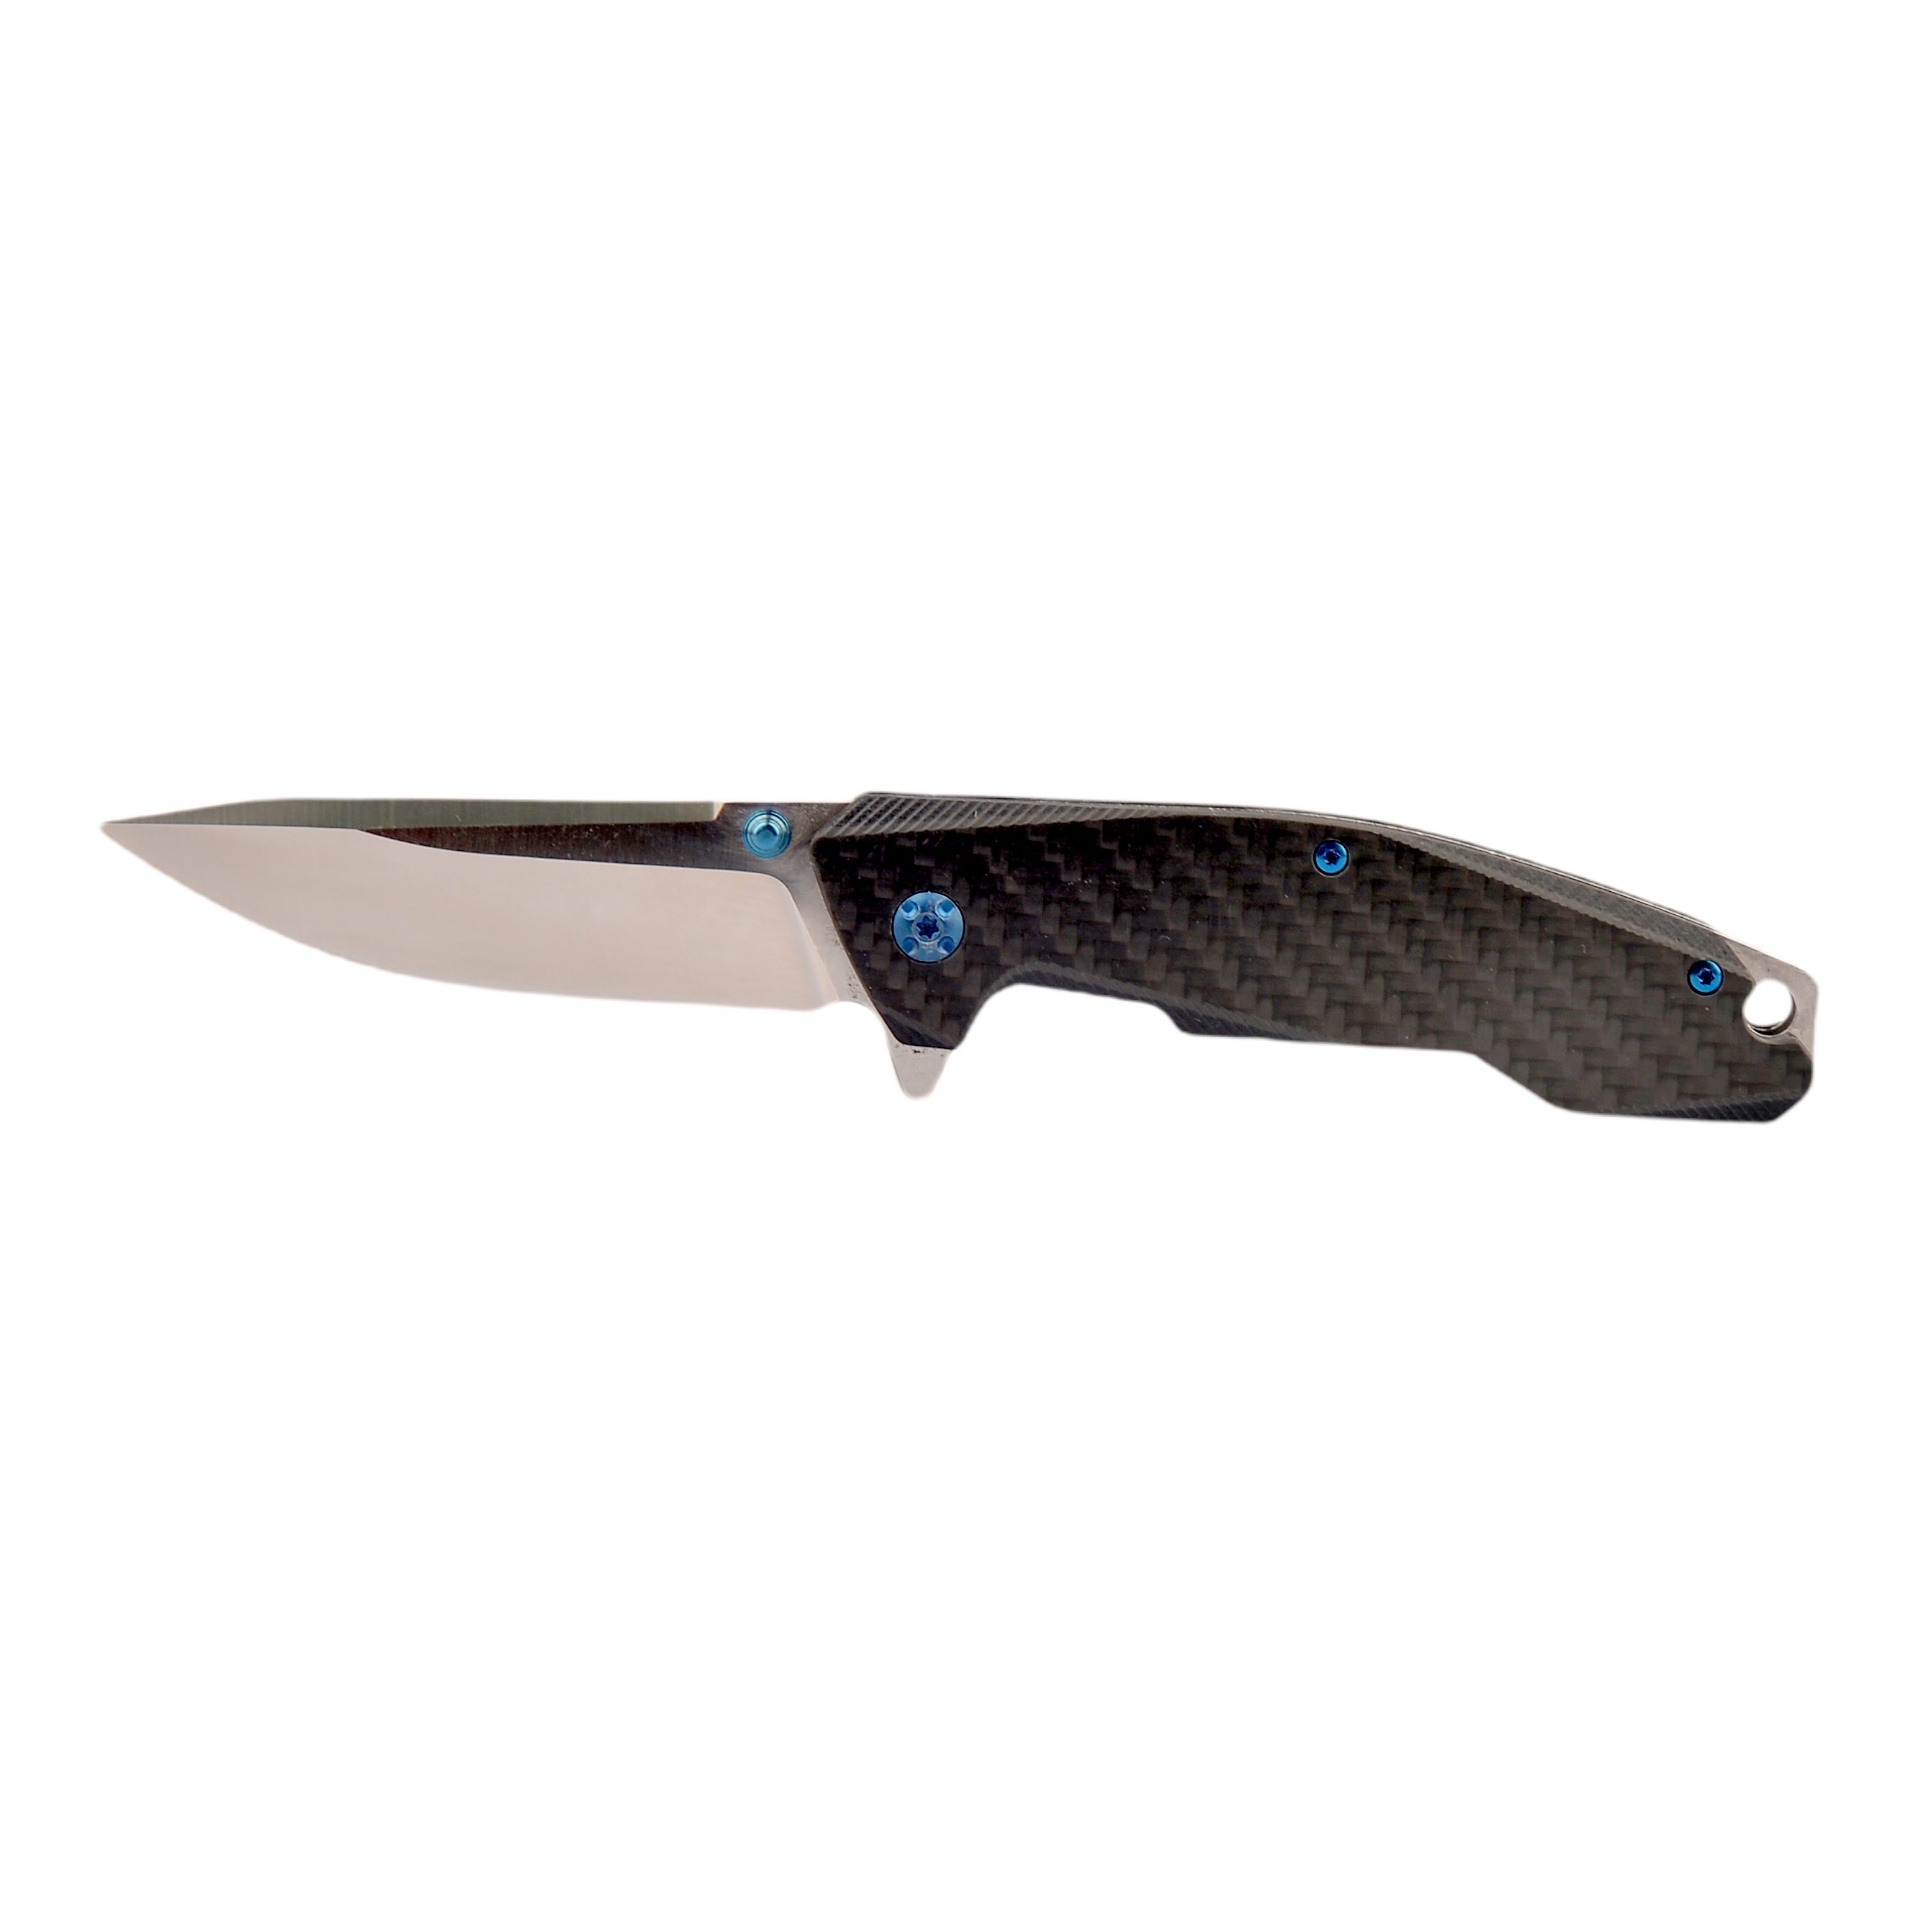 Сгъваем нож Dulotec K260 - дръжка от G10 с карбоново покритие